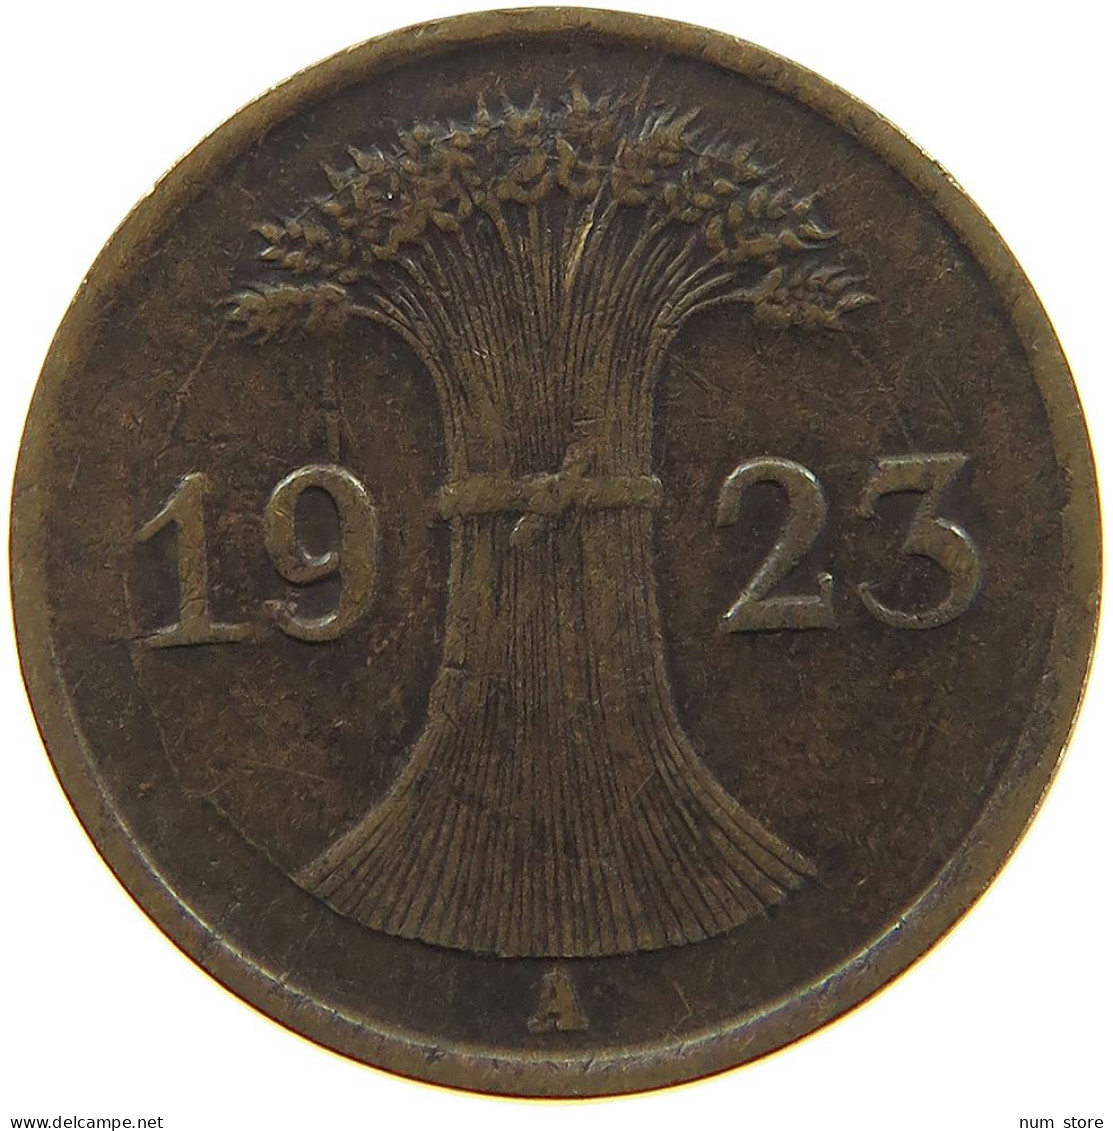 WEIMARER REPUBLIK PFENNIG 1923 A  #a074 0675 - 1 Renten- & 1 Reichspfennig